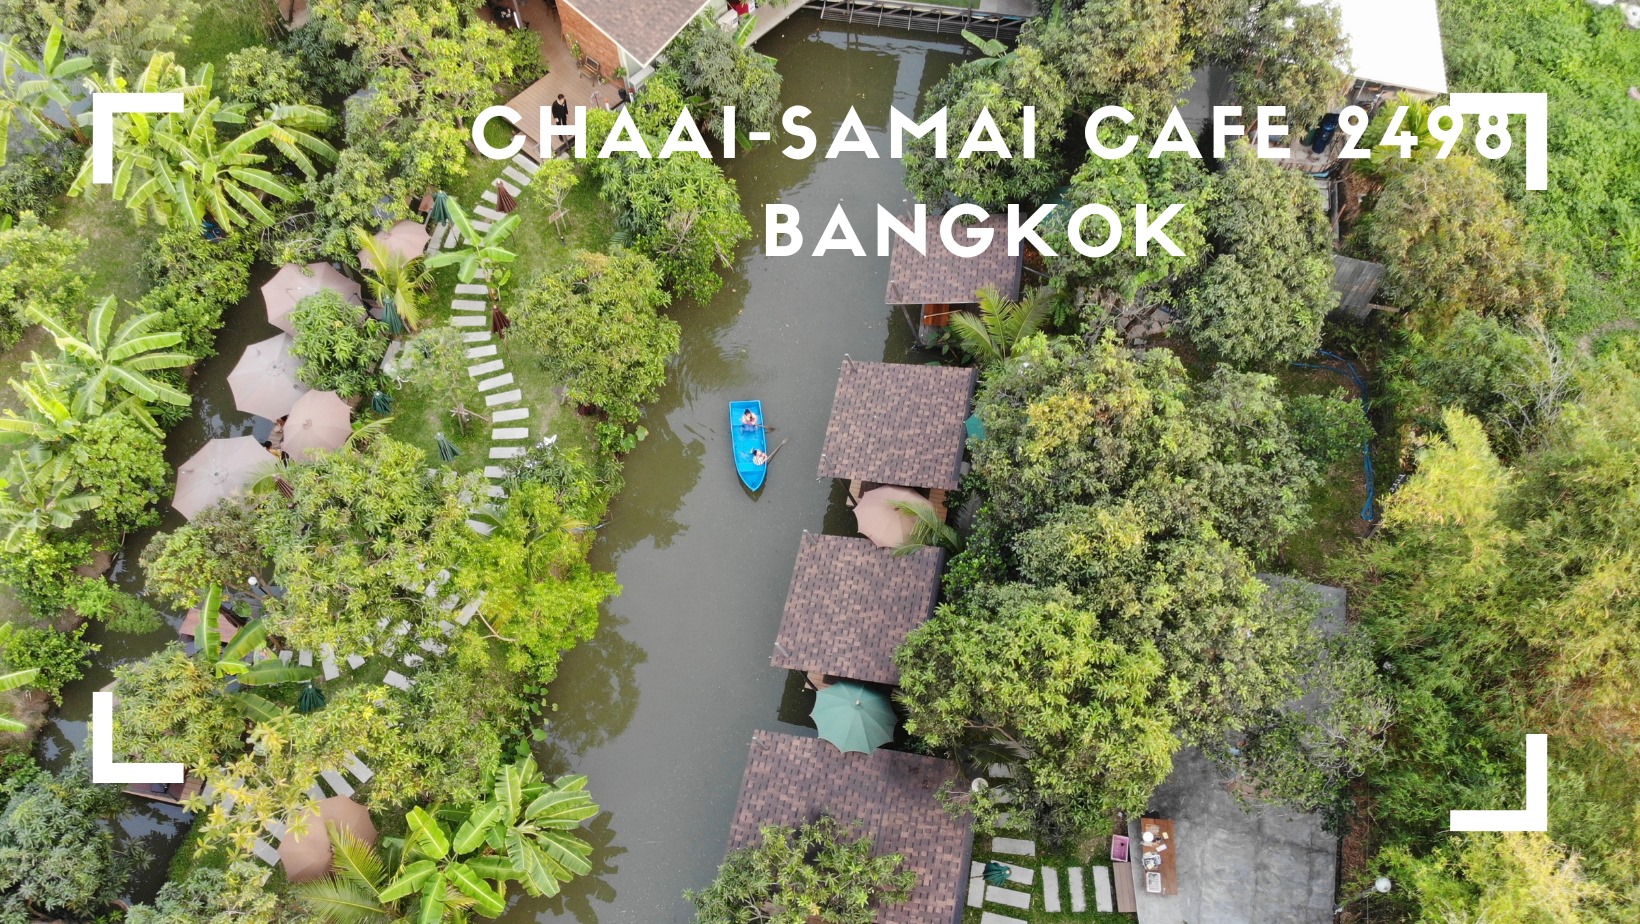 【曼谷景點】都市叢林中的一點綠意，曼谷又一戶外划船咖啡廳：Chaai-Samai 2498 Bangkok café 仲記咖啡廳，體驗田園風光、小河環繞的午茶時光